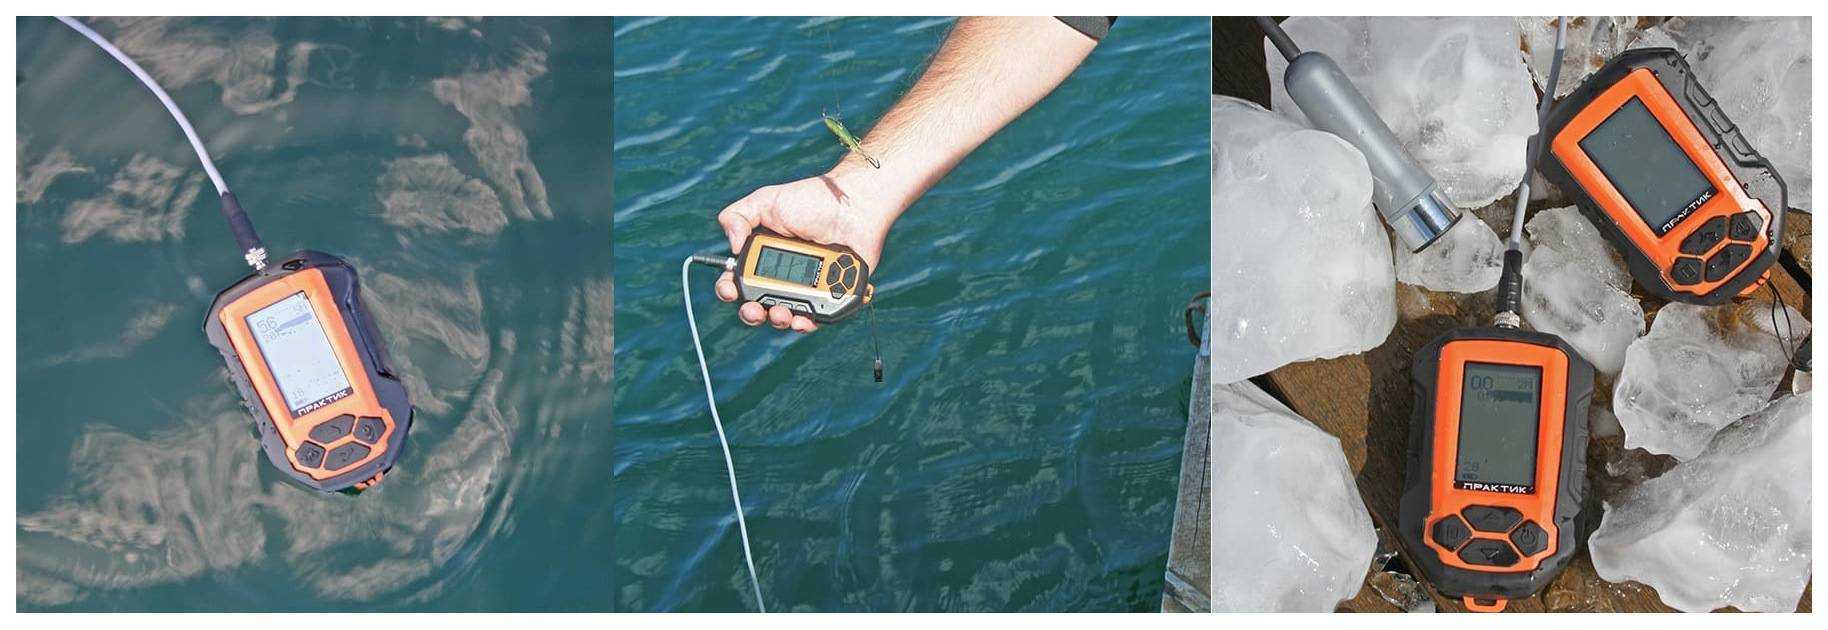 Рыбалка на спиннинг | спиннинг клаб - советы для начинающих рыбаков
эхолот для рыбалки с берега - особенности применения